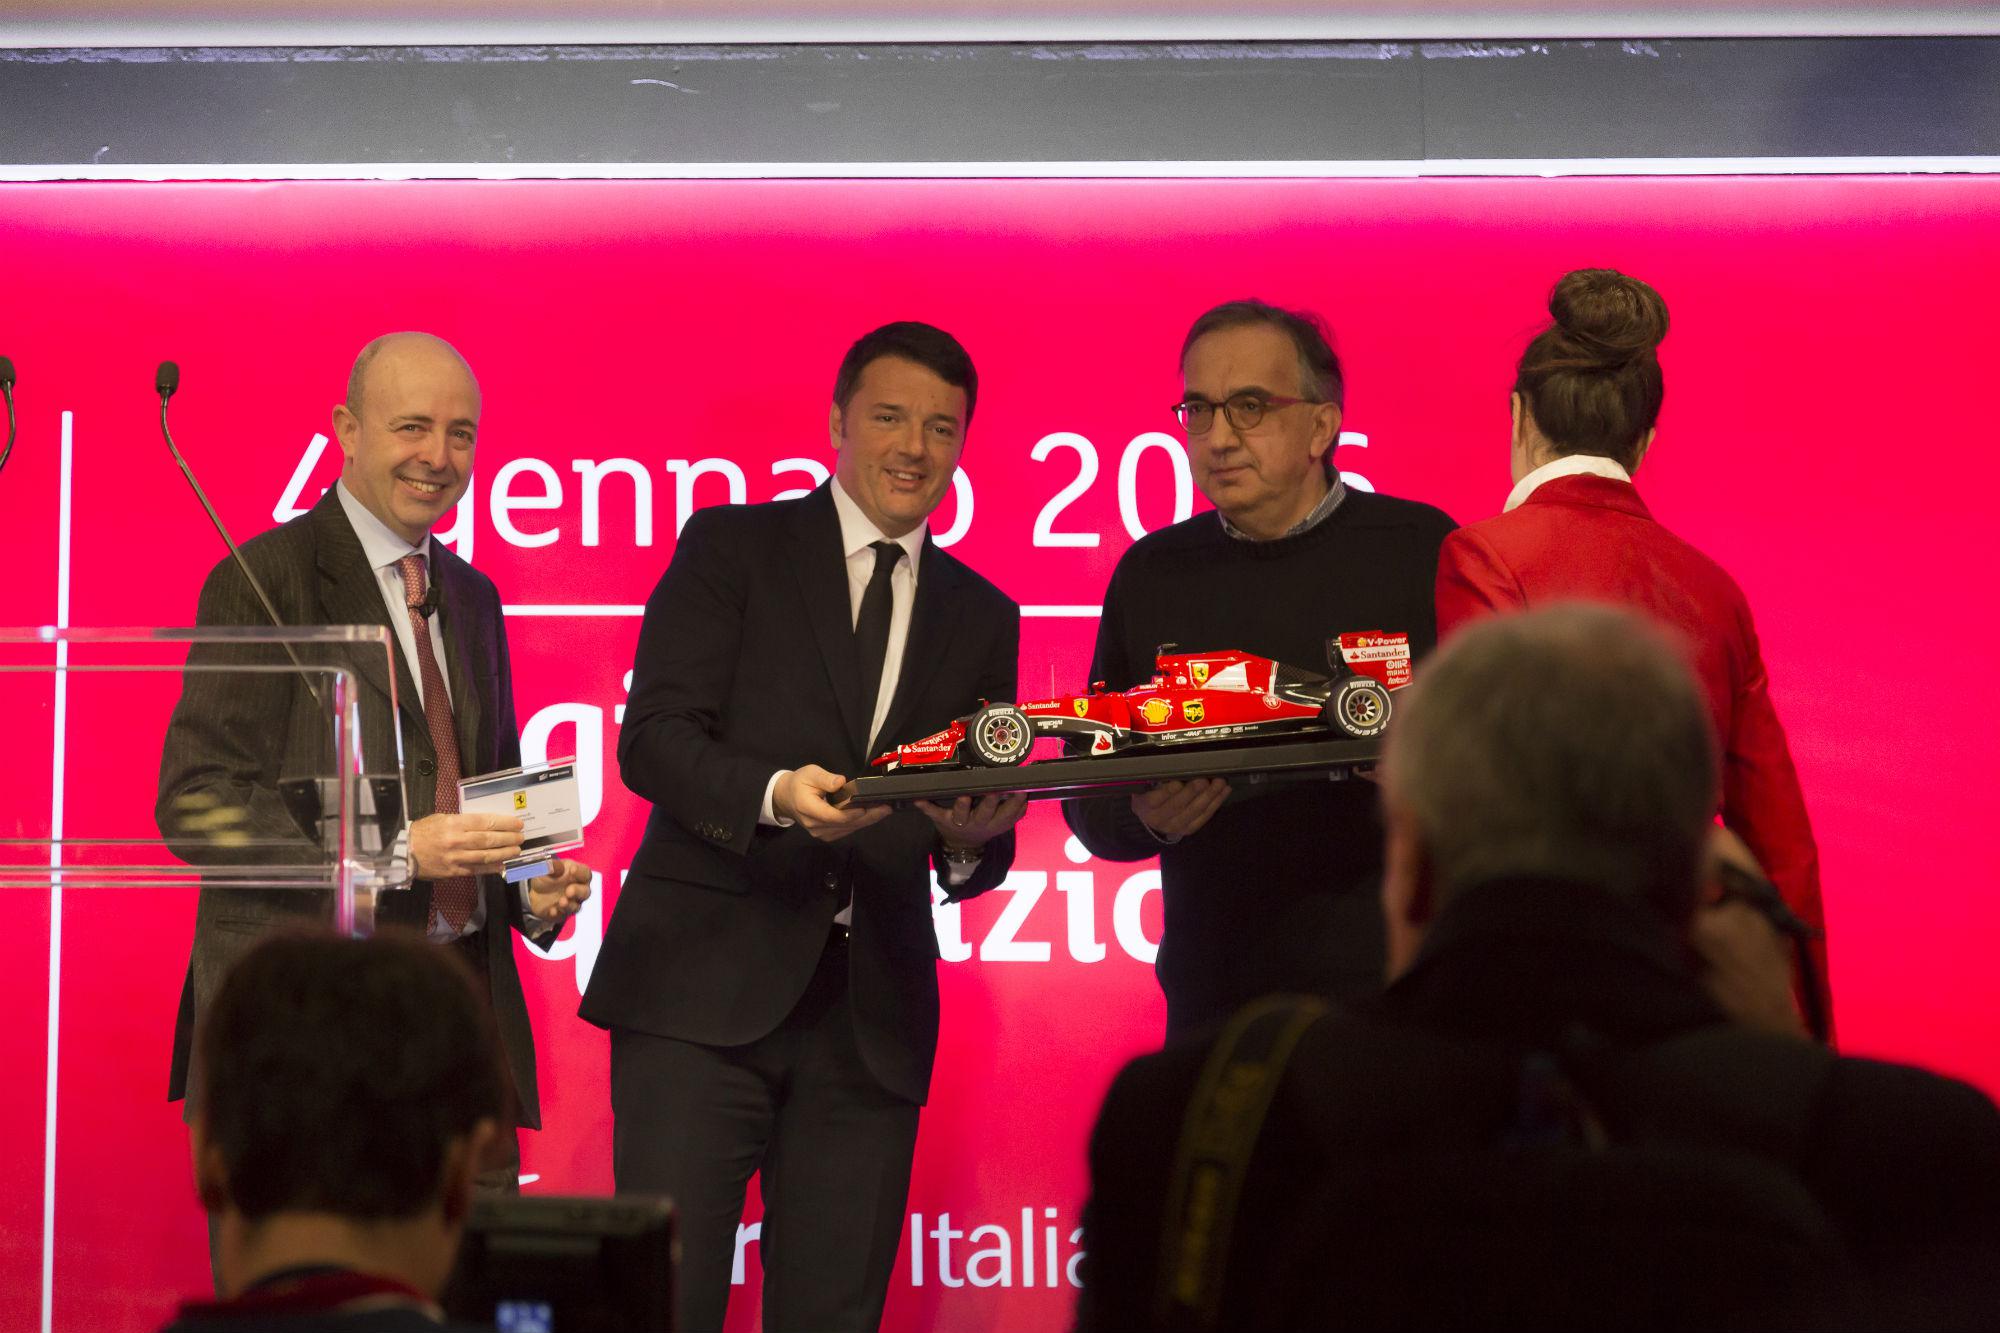 Il presidente del Consiglio Matteo Renzi e l'amministratore delegato di Fca Sergio Marchionne